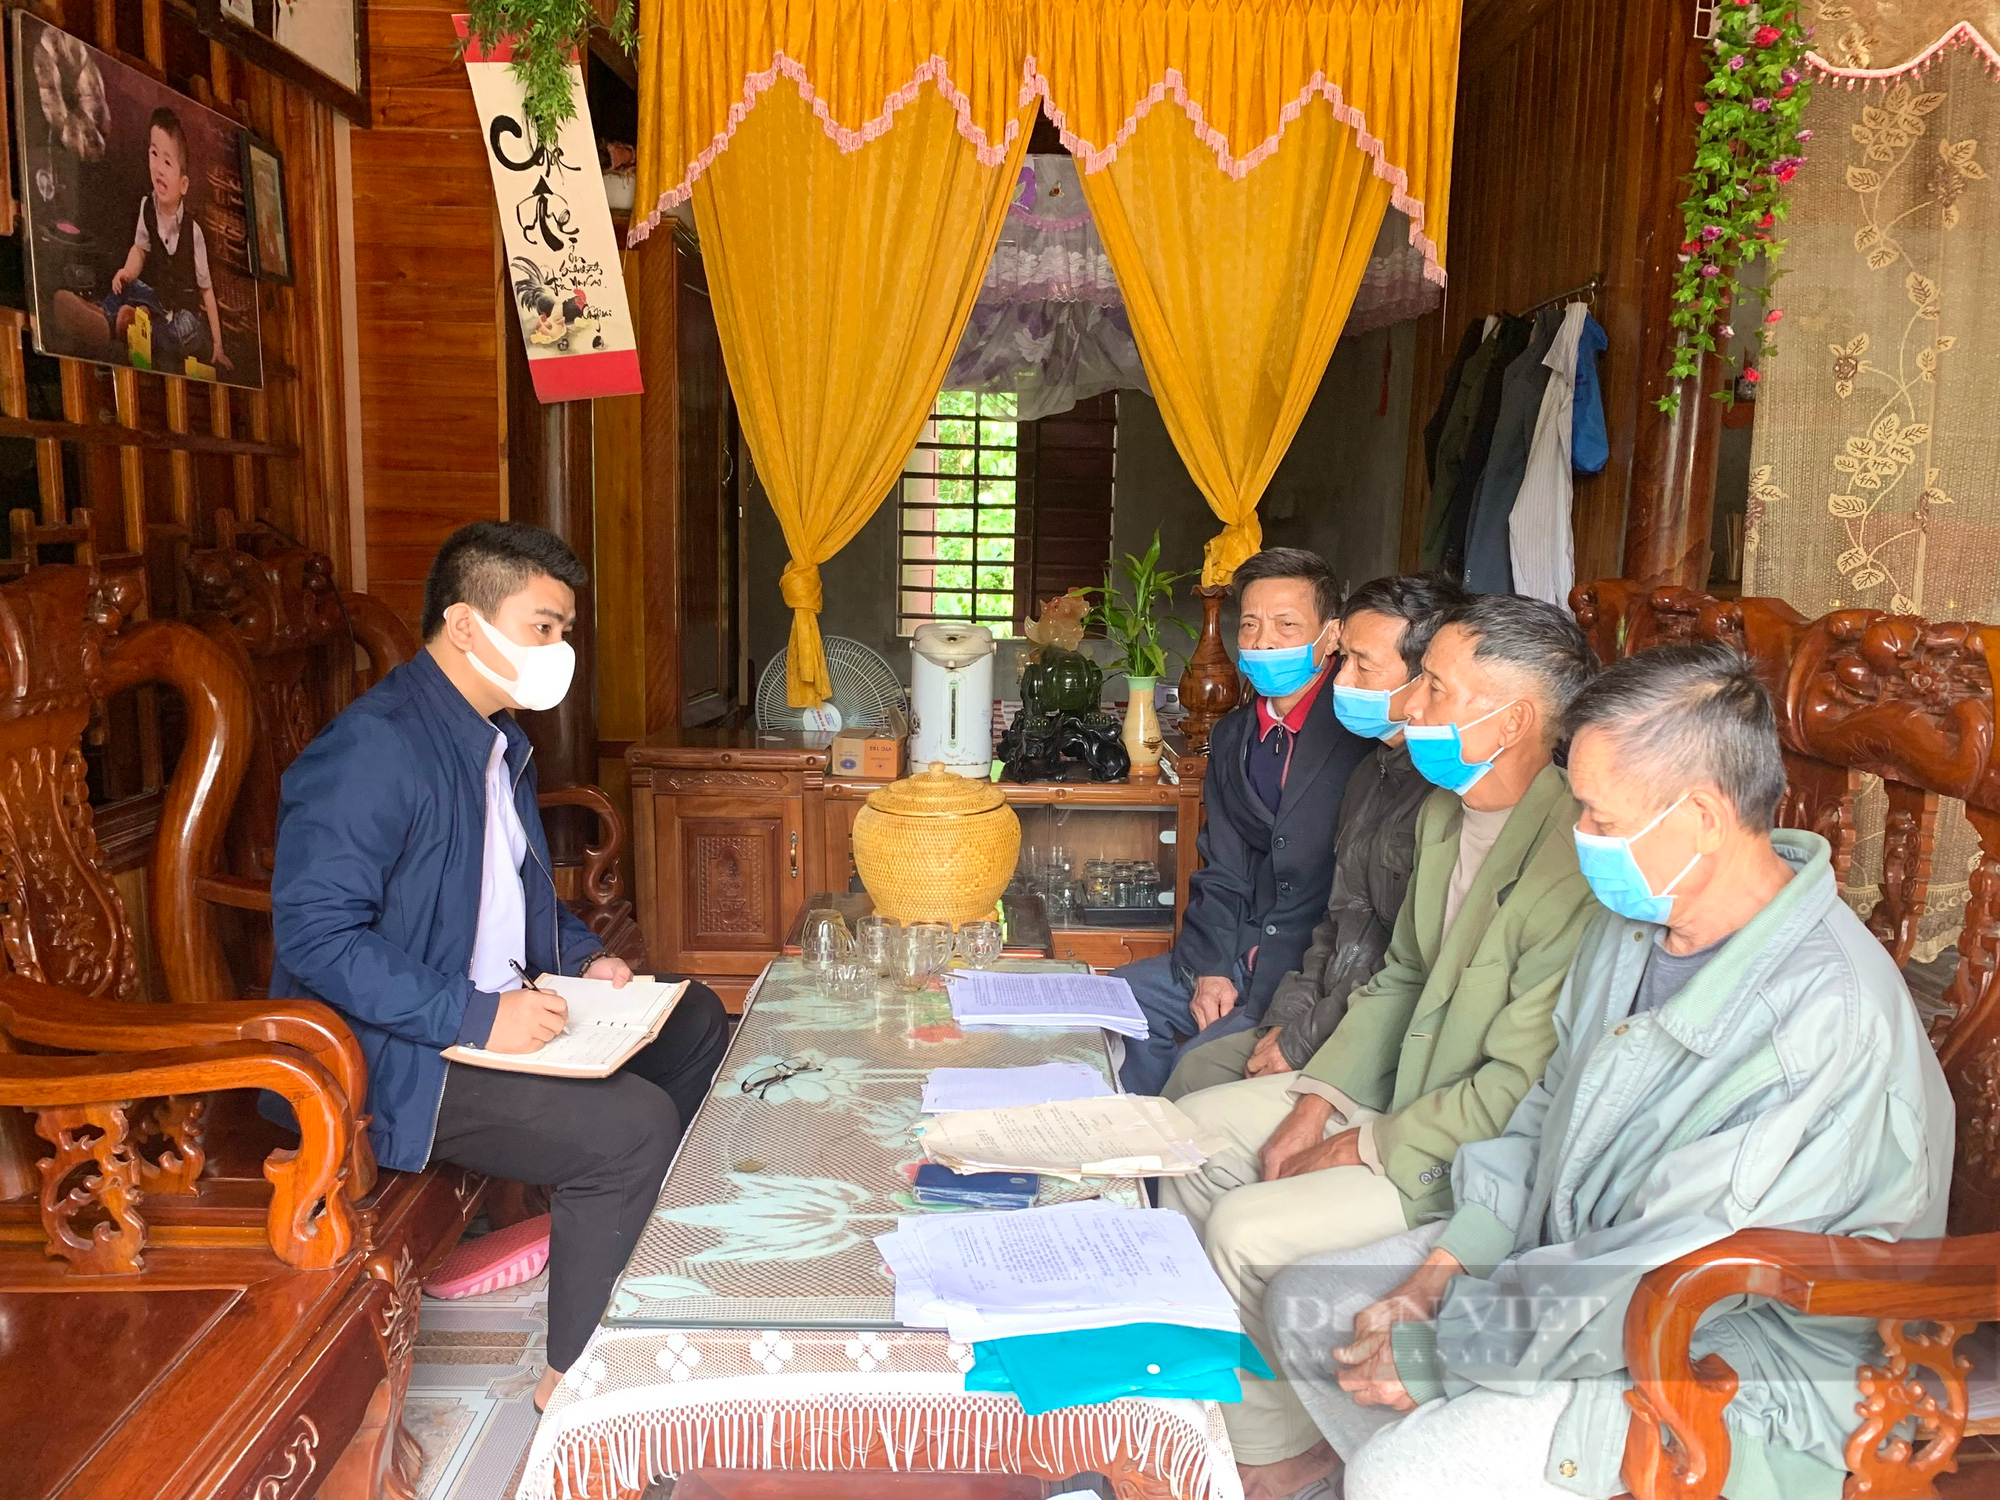 Quảng Bình: Chia sẻ của 4 nông dân bị kết án oan vừa nhận được lời xin lỗi - Ảnh 3.